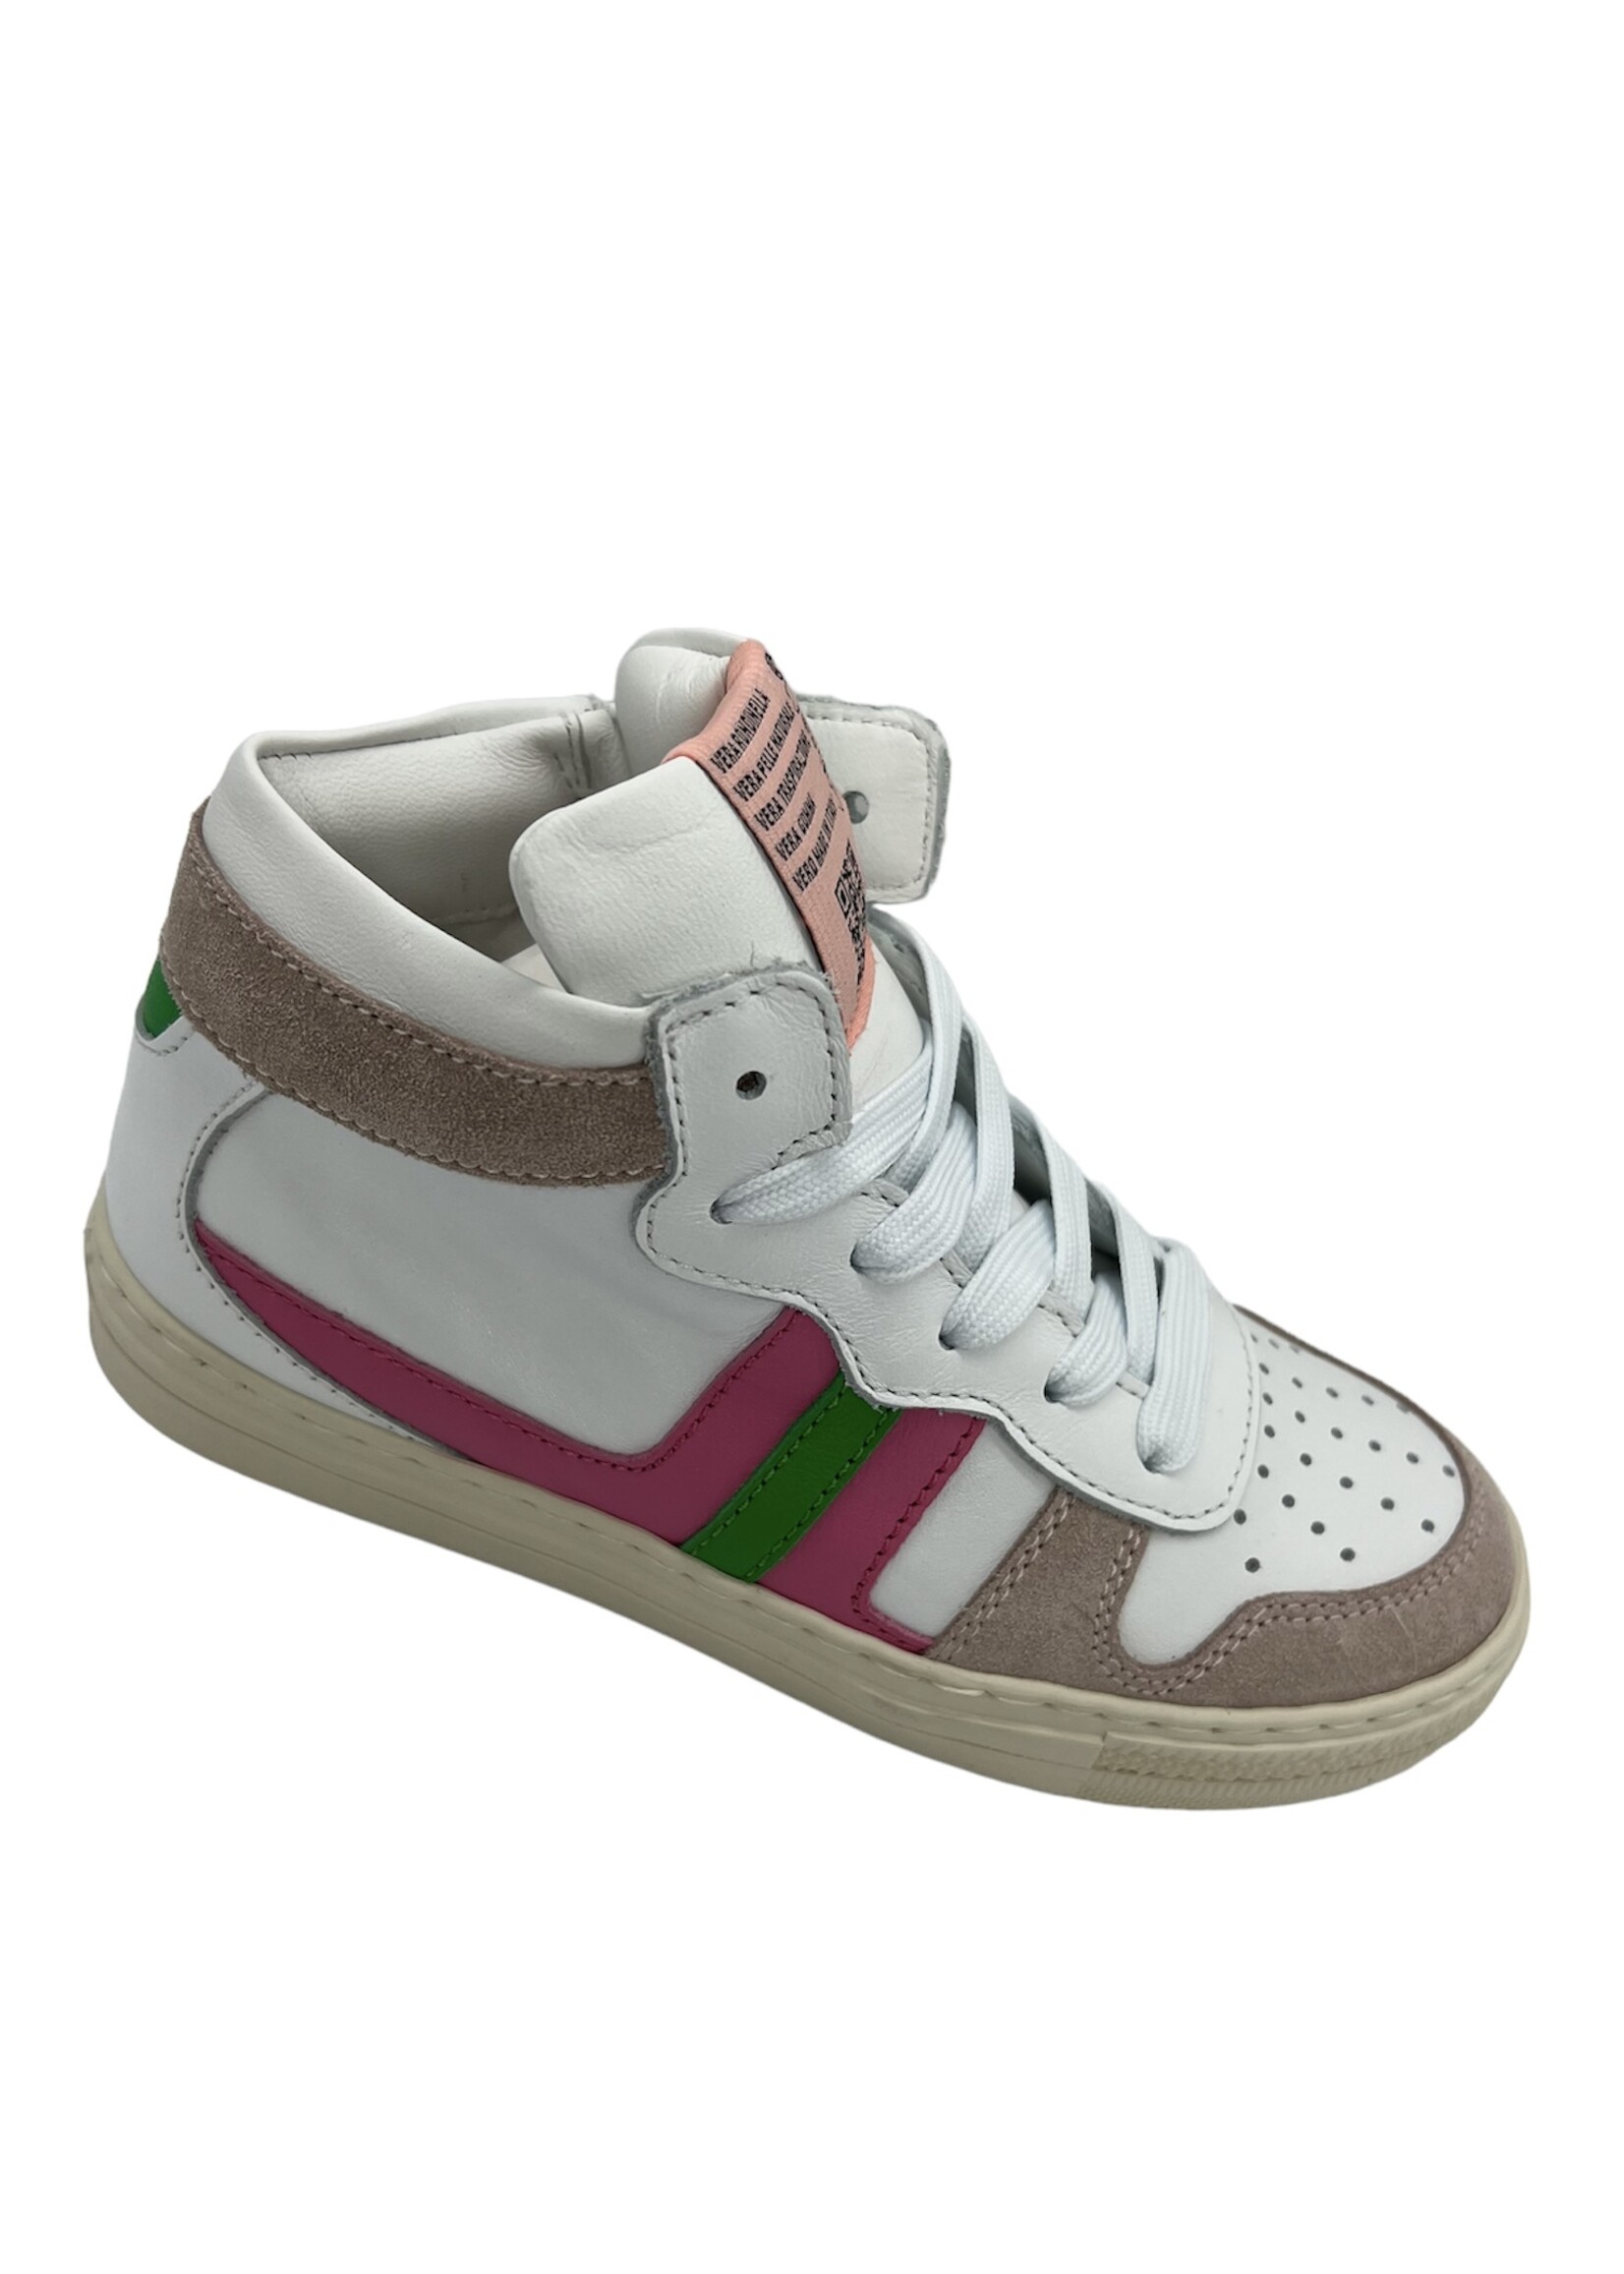 Rondinella hoge sneaker wit roze groen